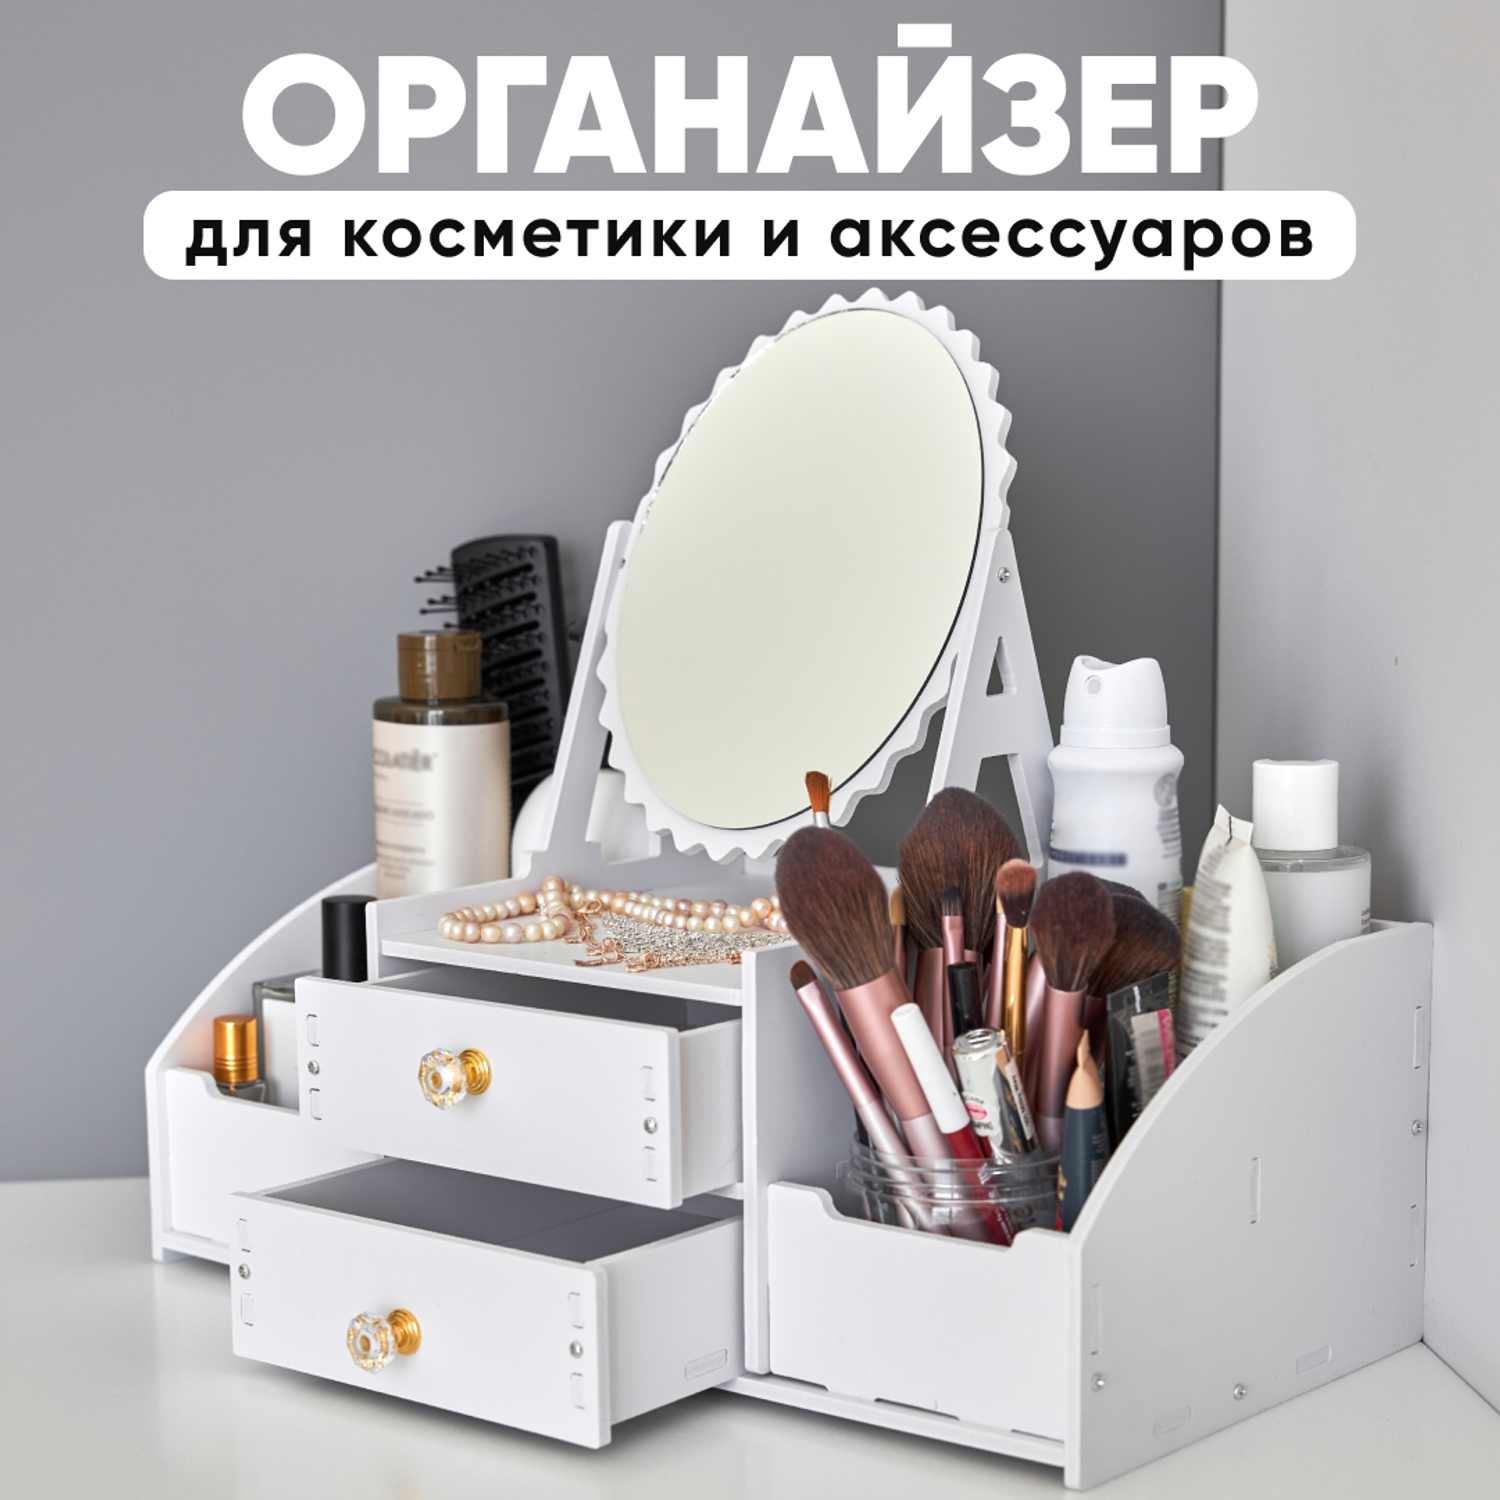 Beauty Box функциональный комод для косметики, доставка из Москвы